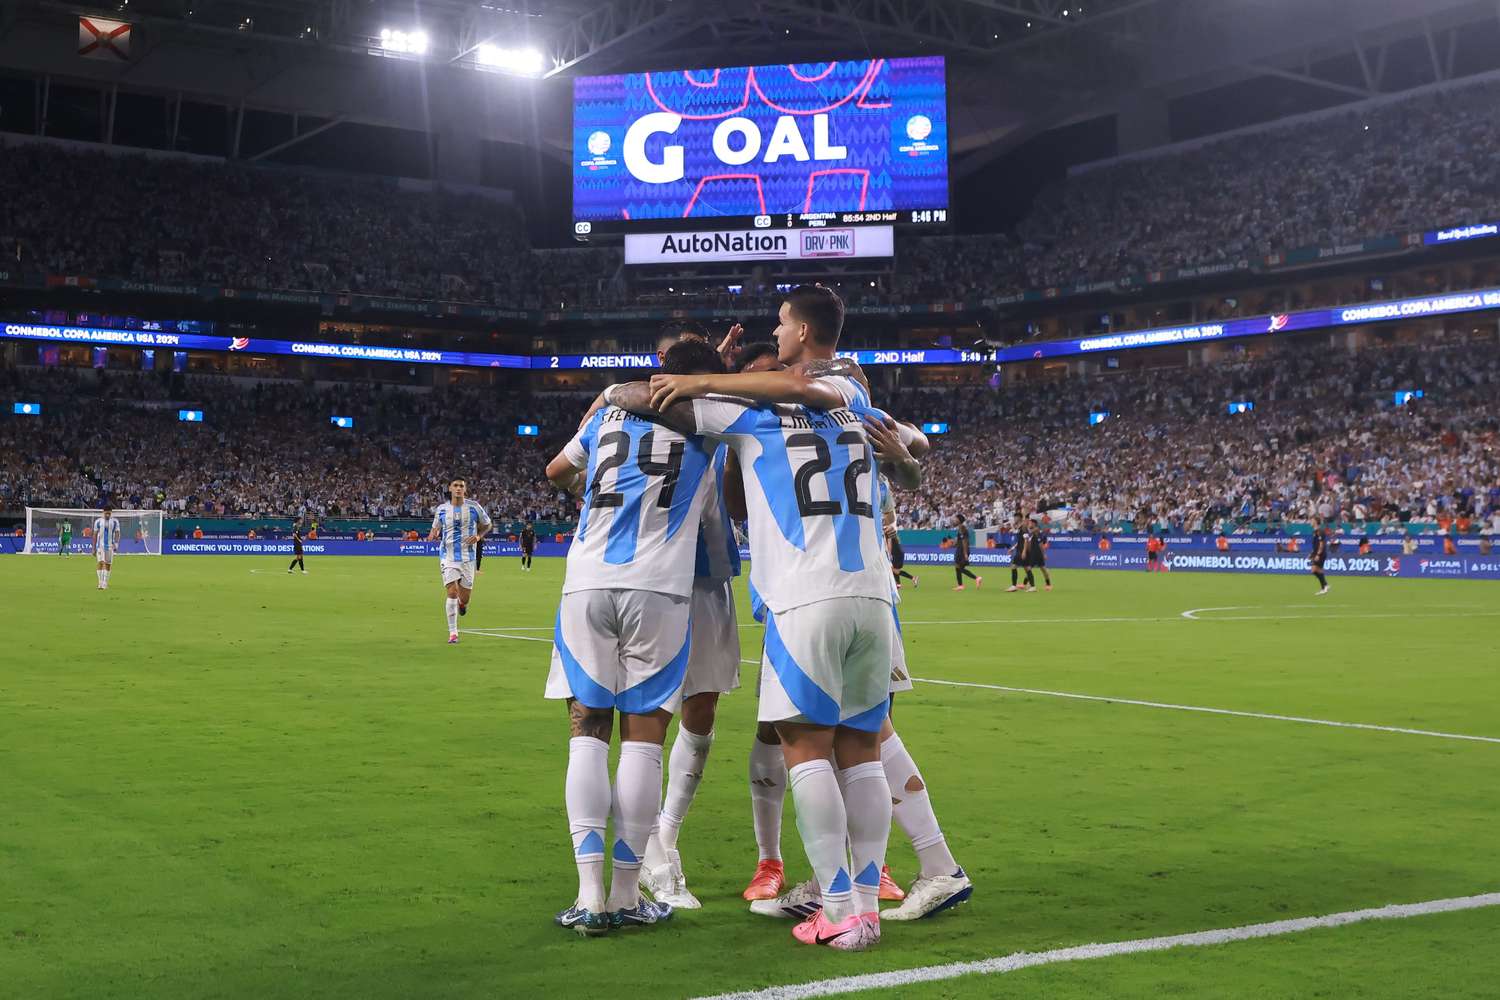 La Selección argentina superó la primera fase con puntaje ideal y sin recibir goles.